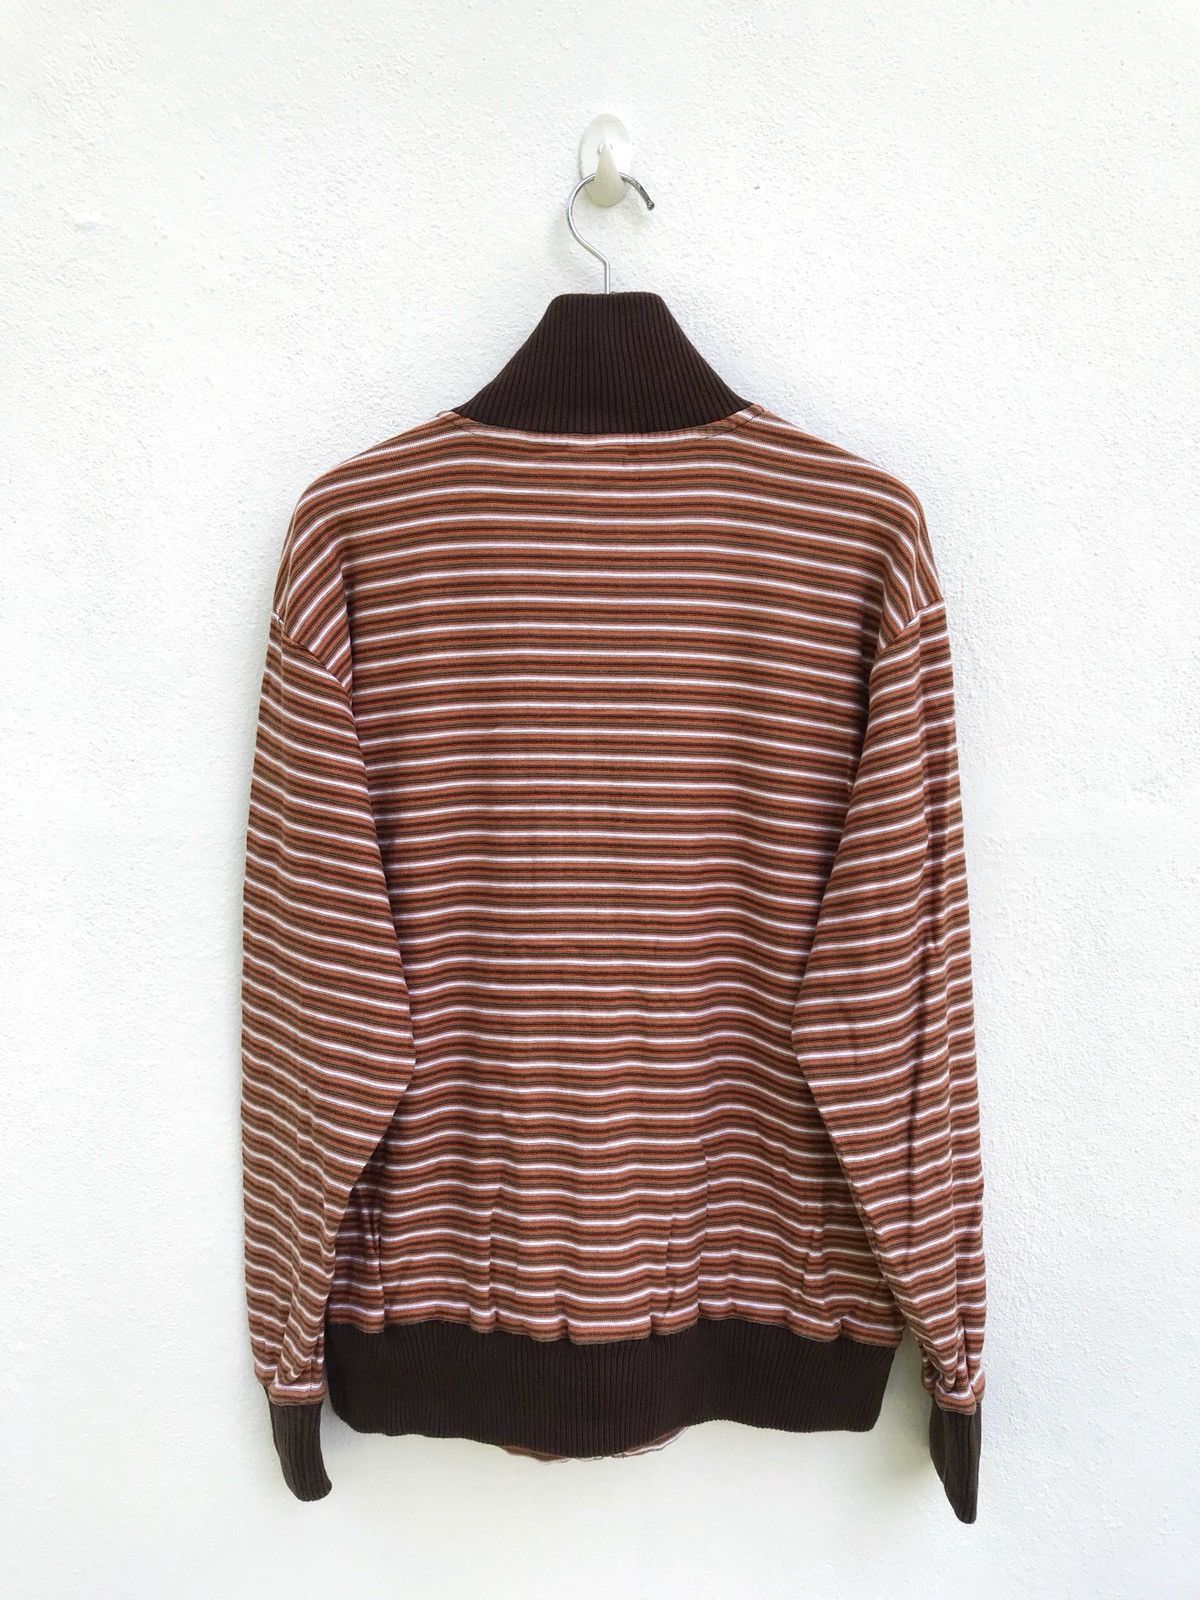 Hang Ten Hang Ten Striped Zipper Sweater Size US M / EU 48-50 / 2 - 5 Preview